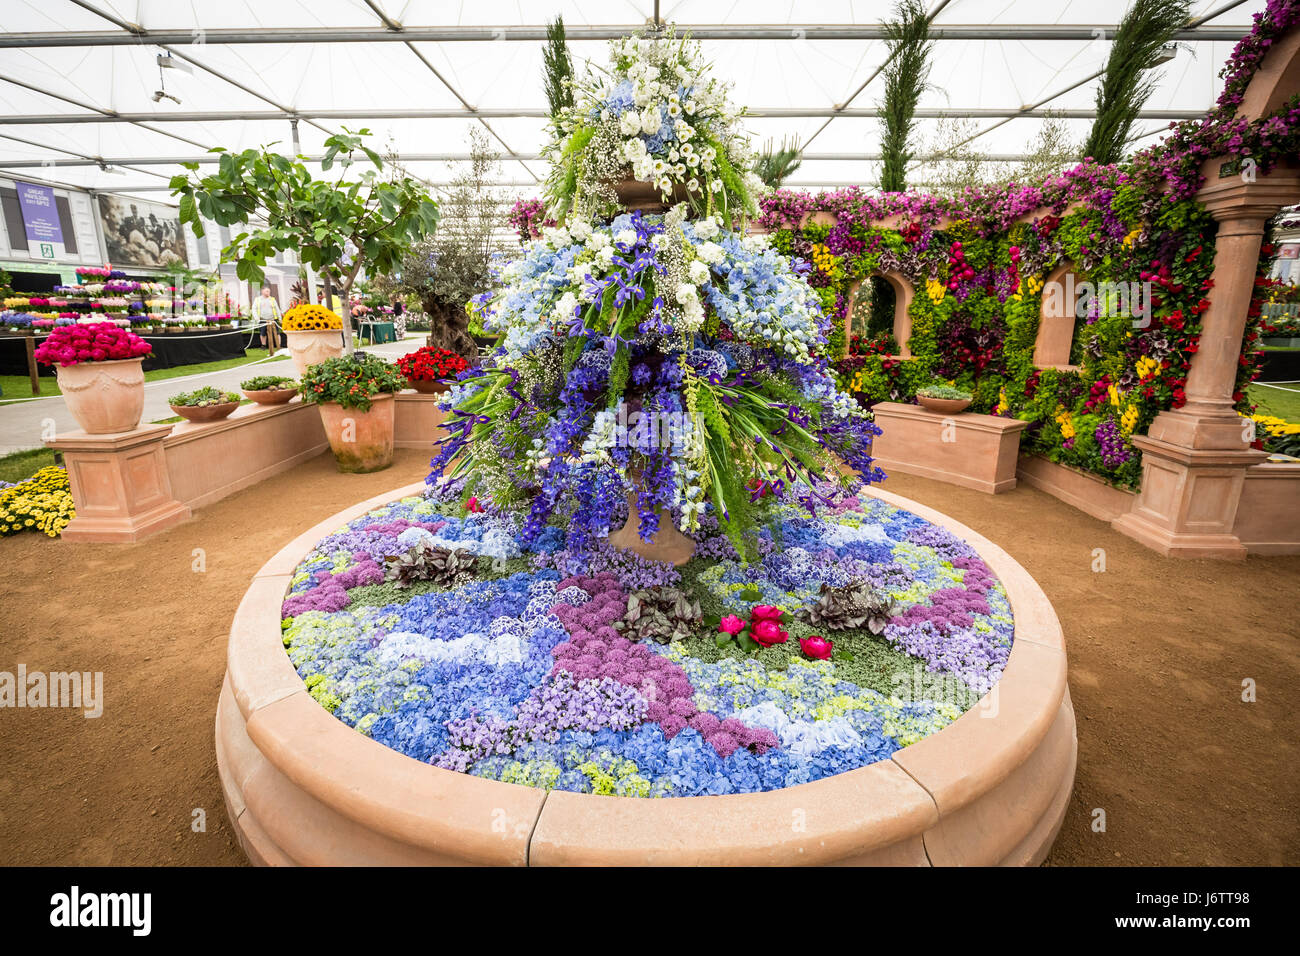 Londres, Royaume-Uni. 22 mai, 2017. RHS Chelsea Flower Show © Guy Josse/Alamy Live News Banque D'Images